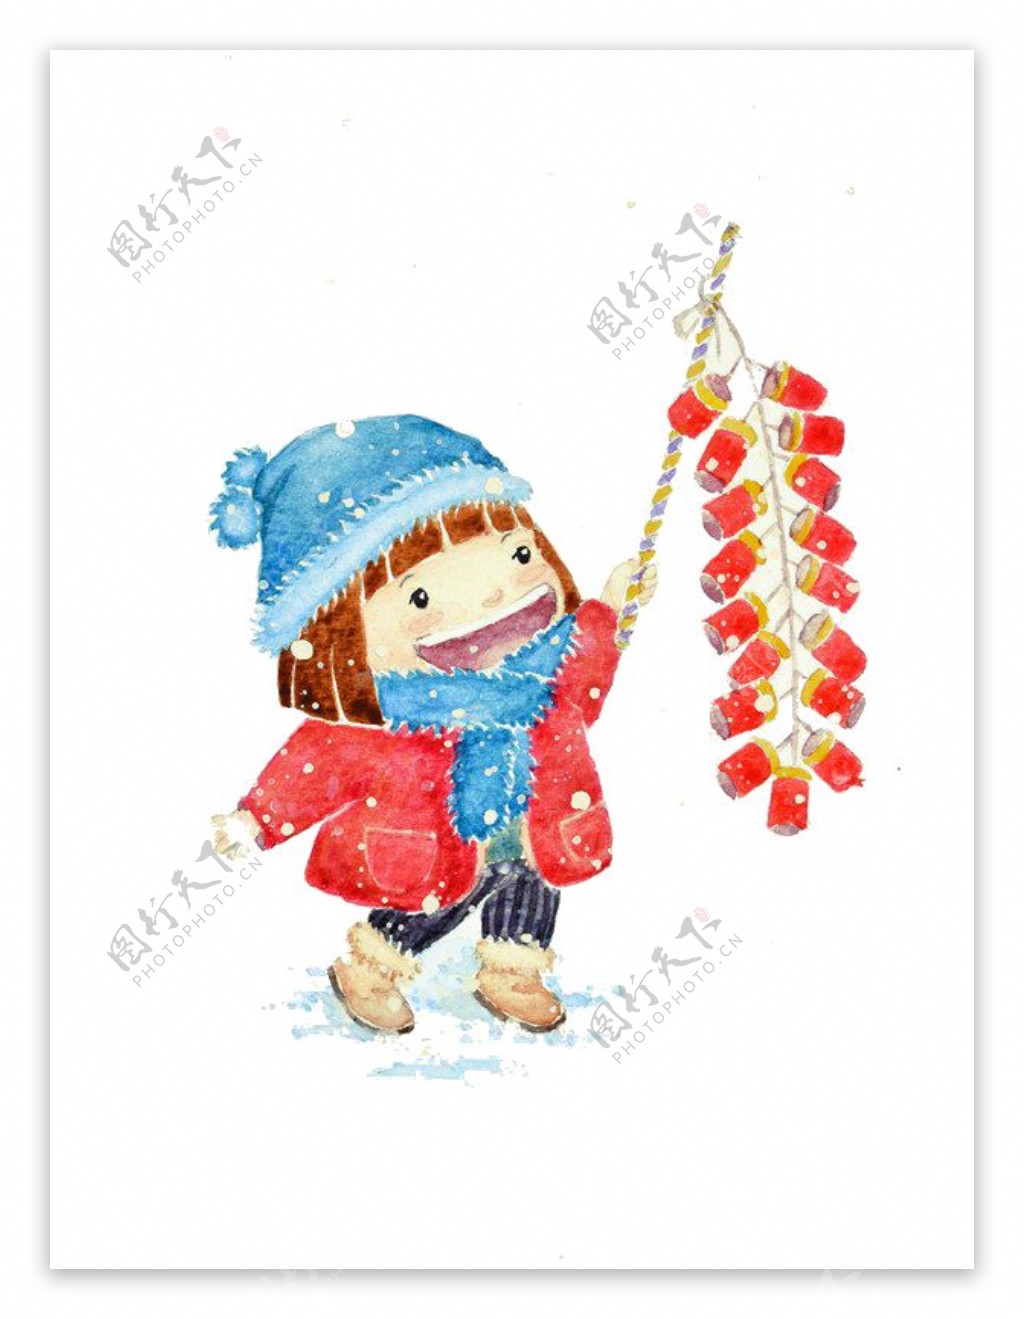 春节下雪天举着灯笼的卡通女孩